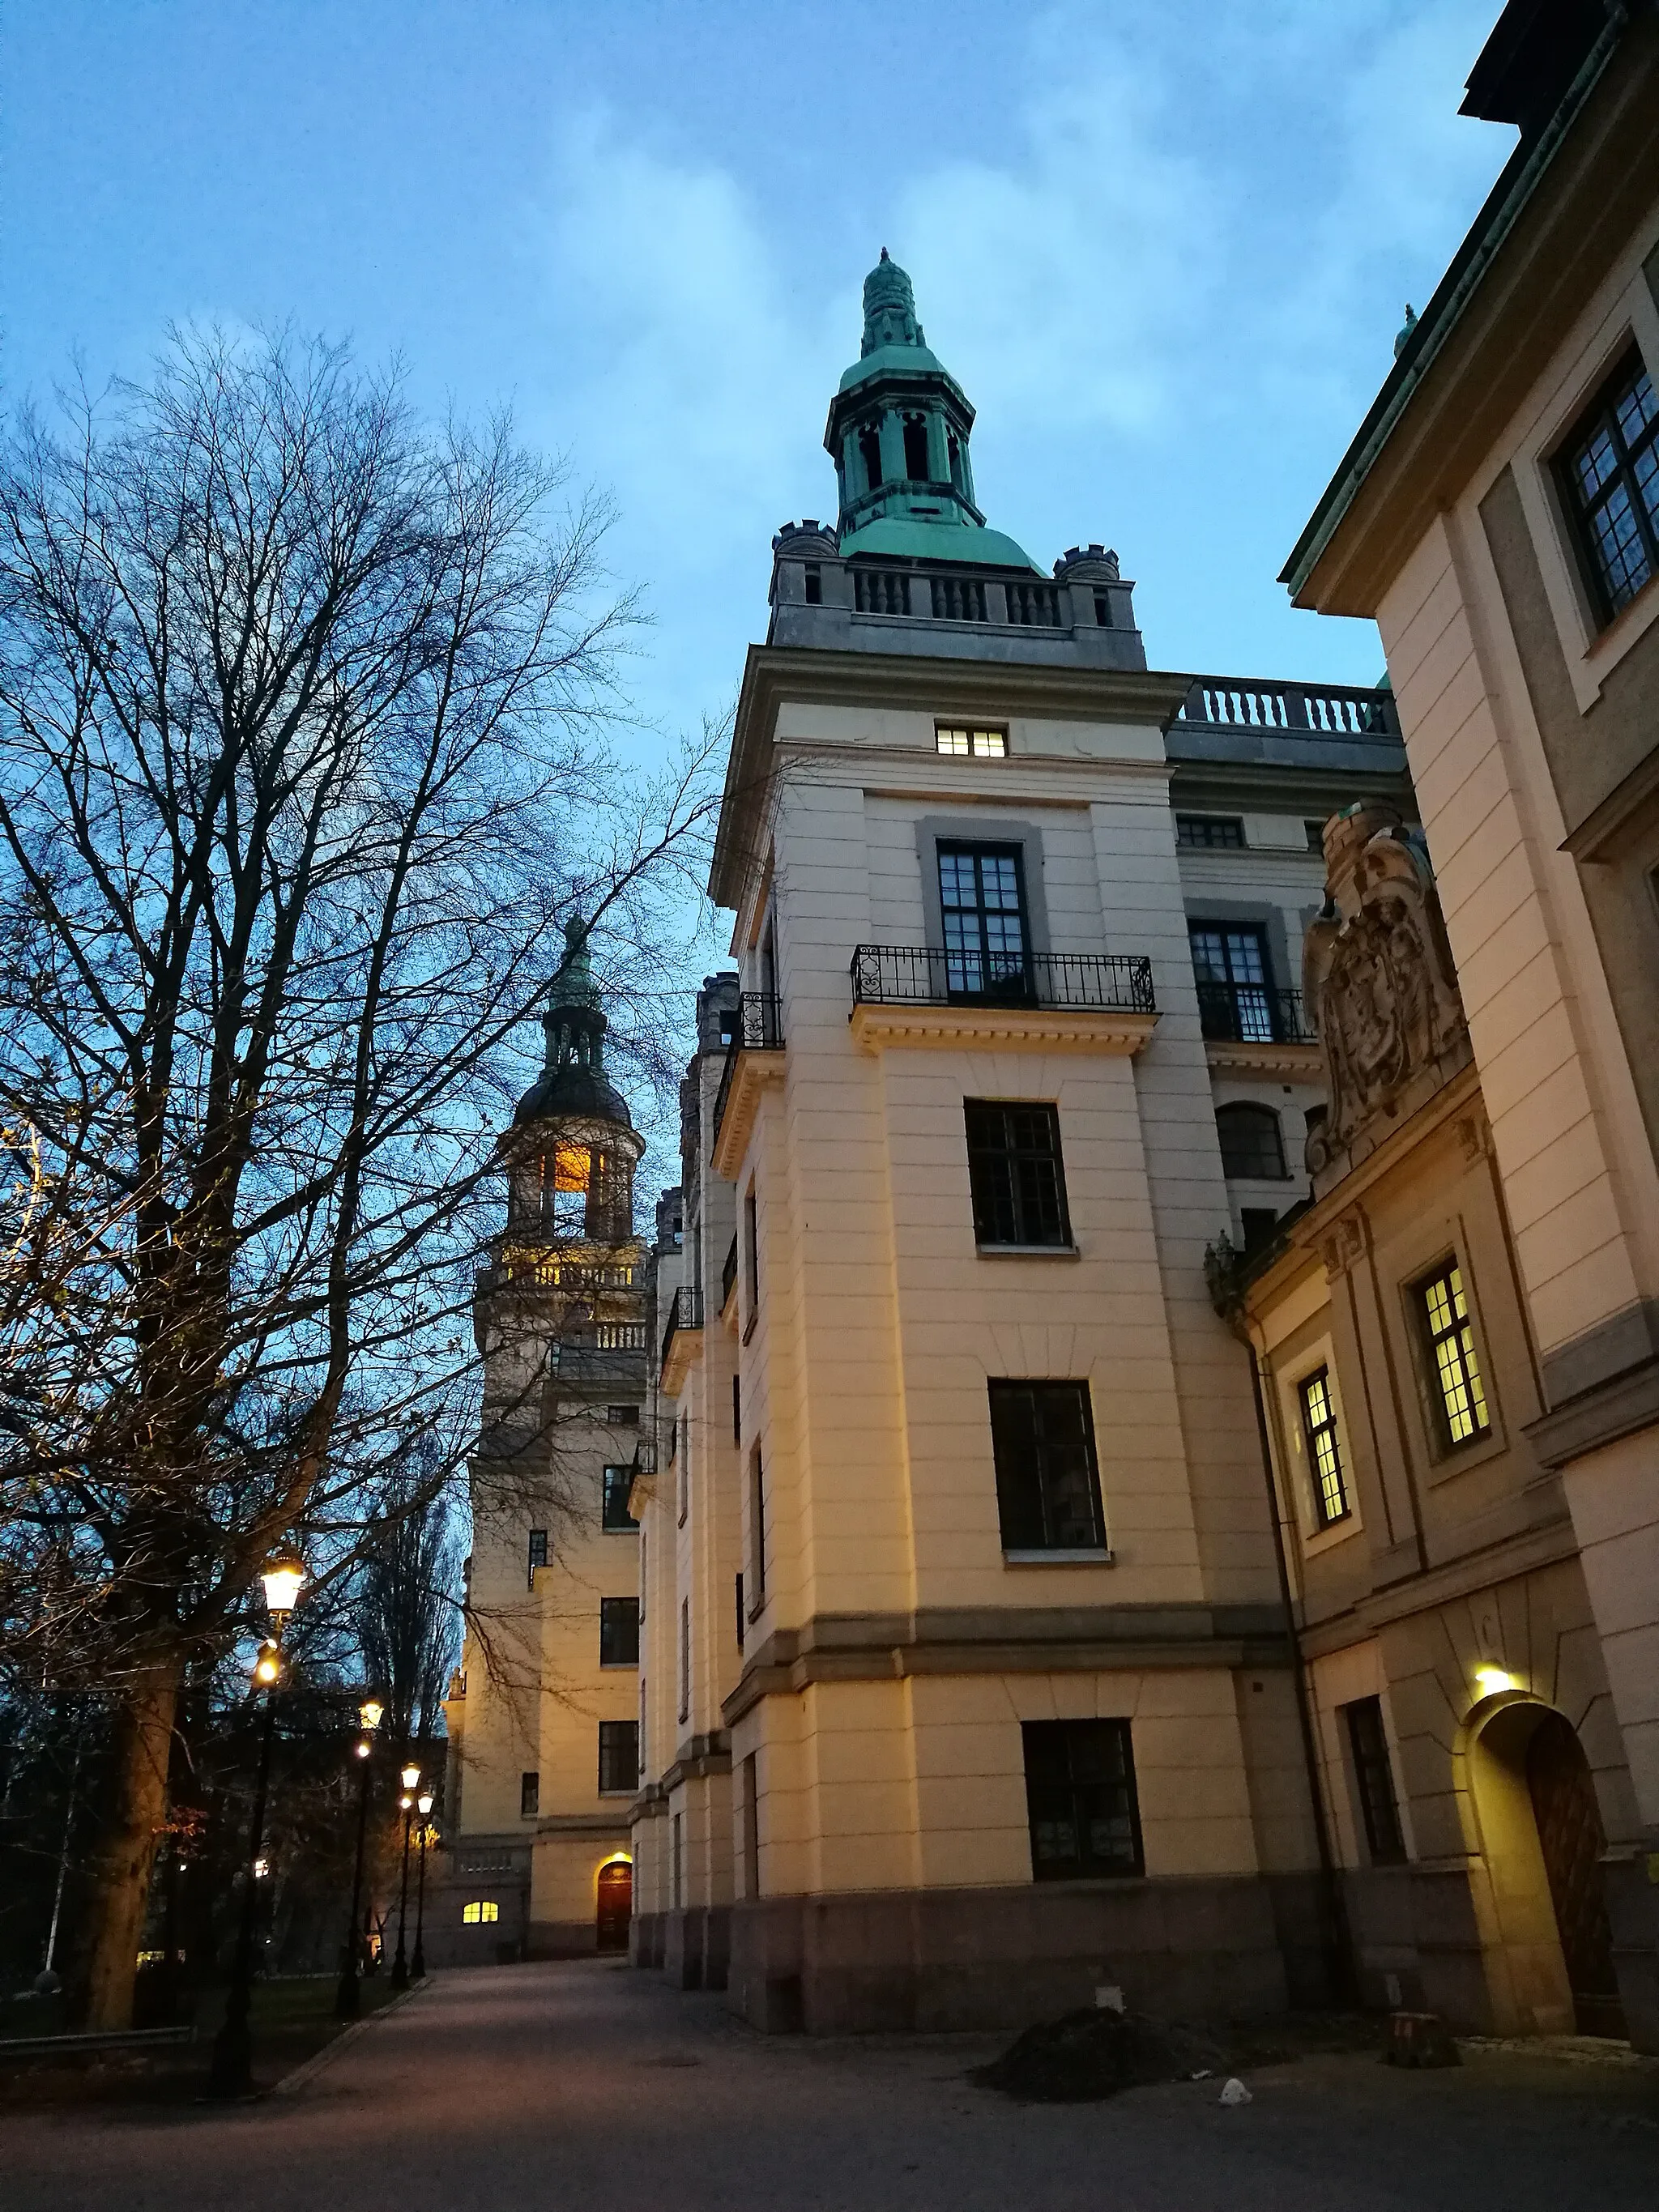 Bild av Stockholm